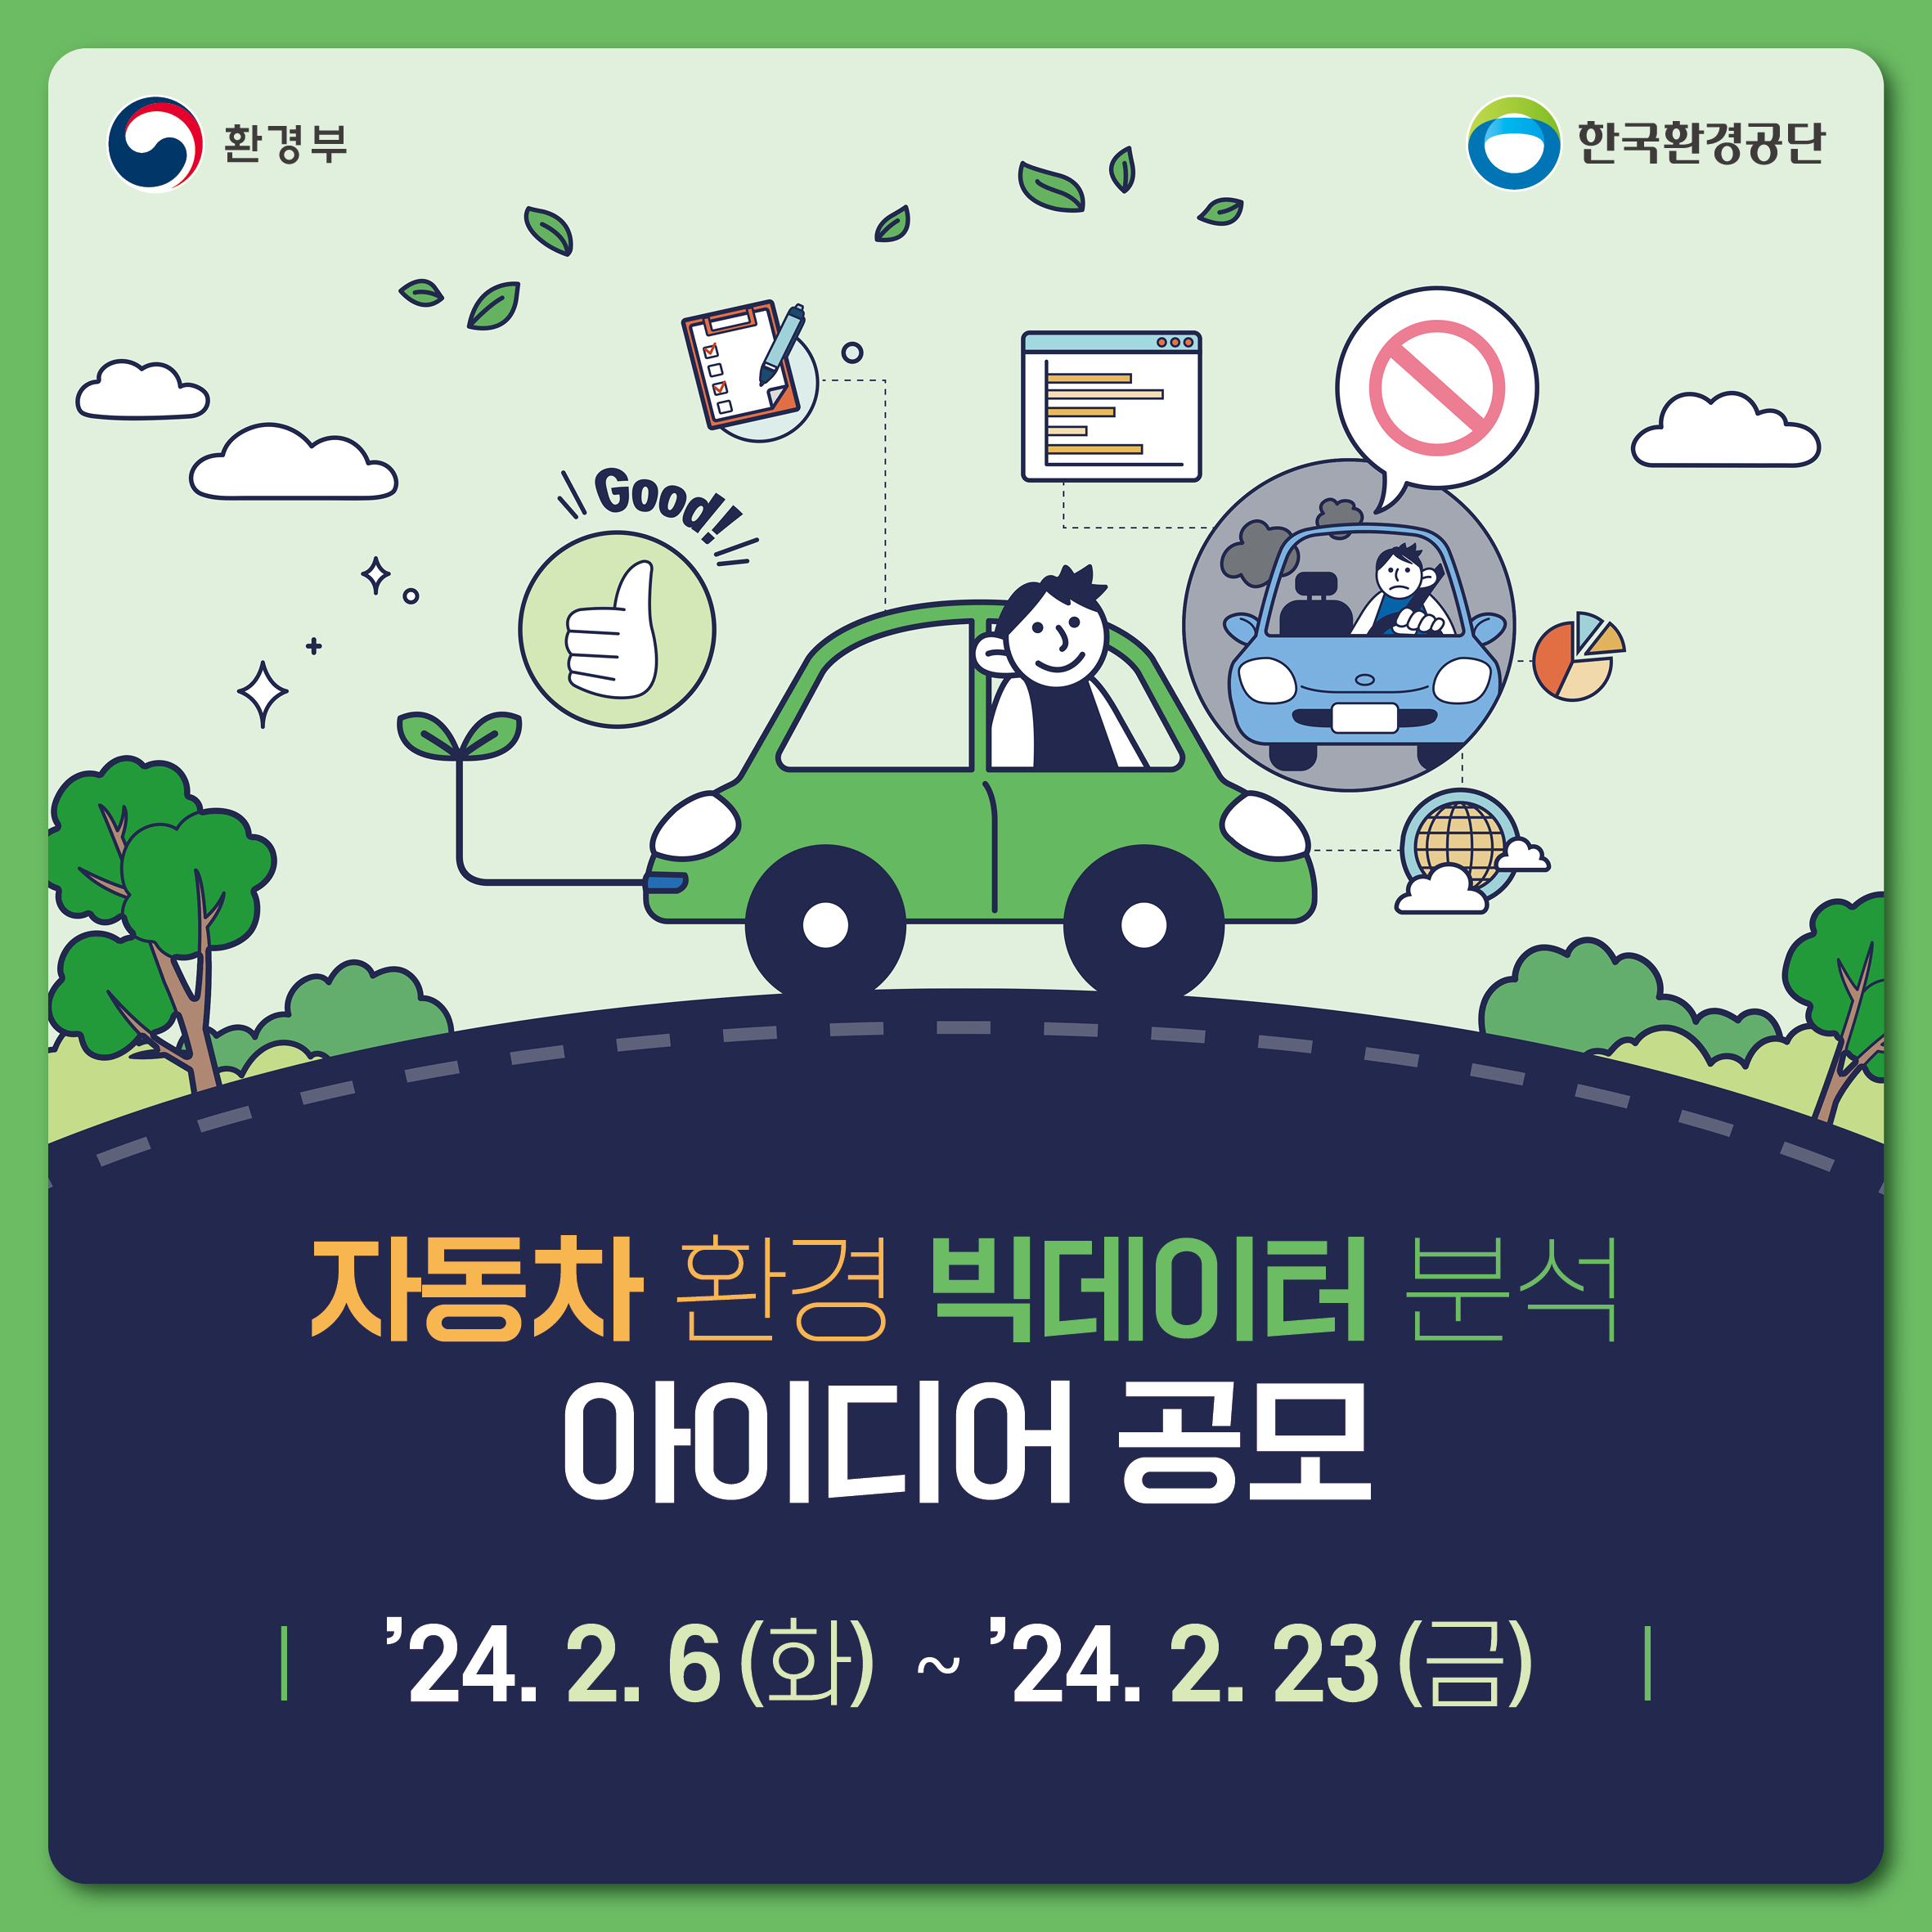 환경부 한국환경공단 자동차 환경 빅데이터 분석 아이디어 공모 '24. 2. 6 (화) ~ '24. 2. 23 (금)